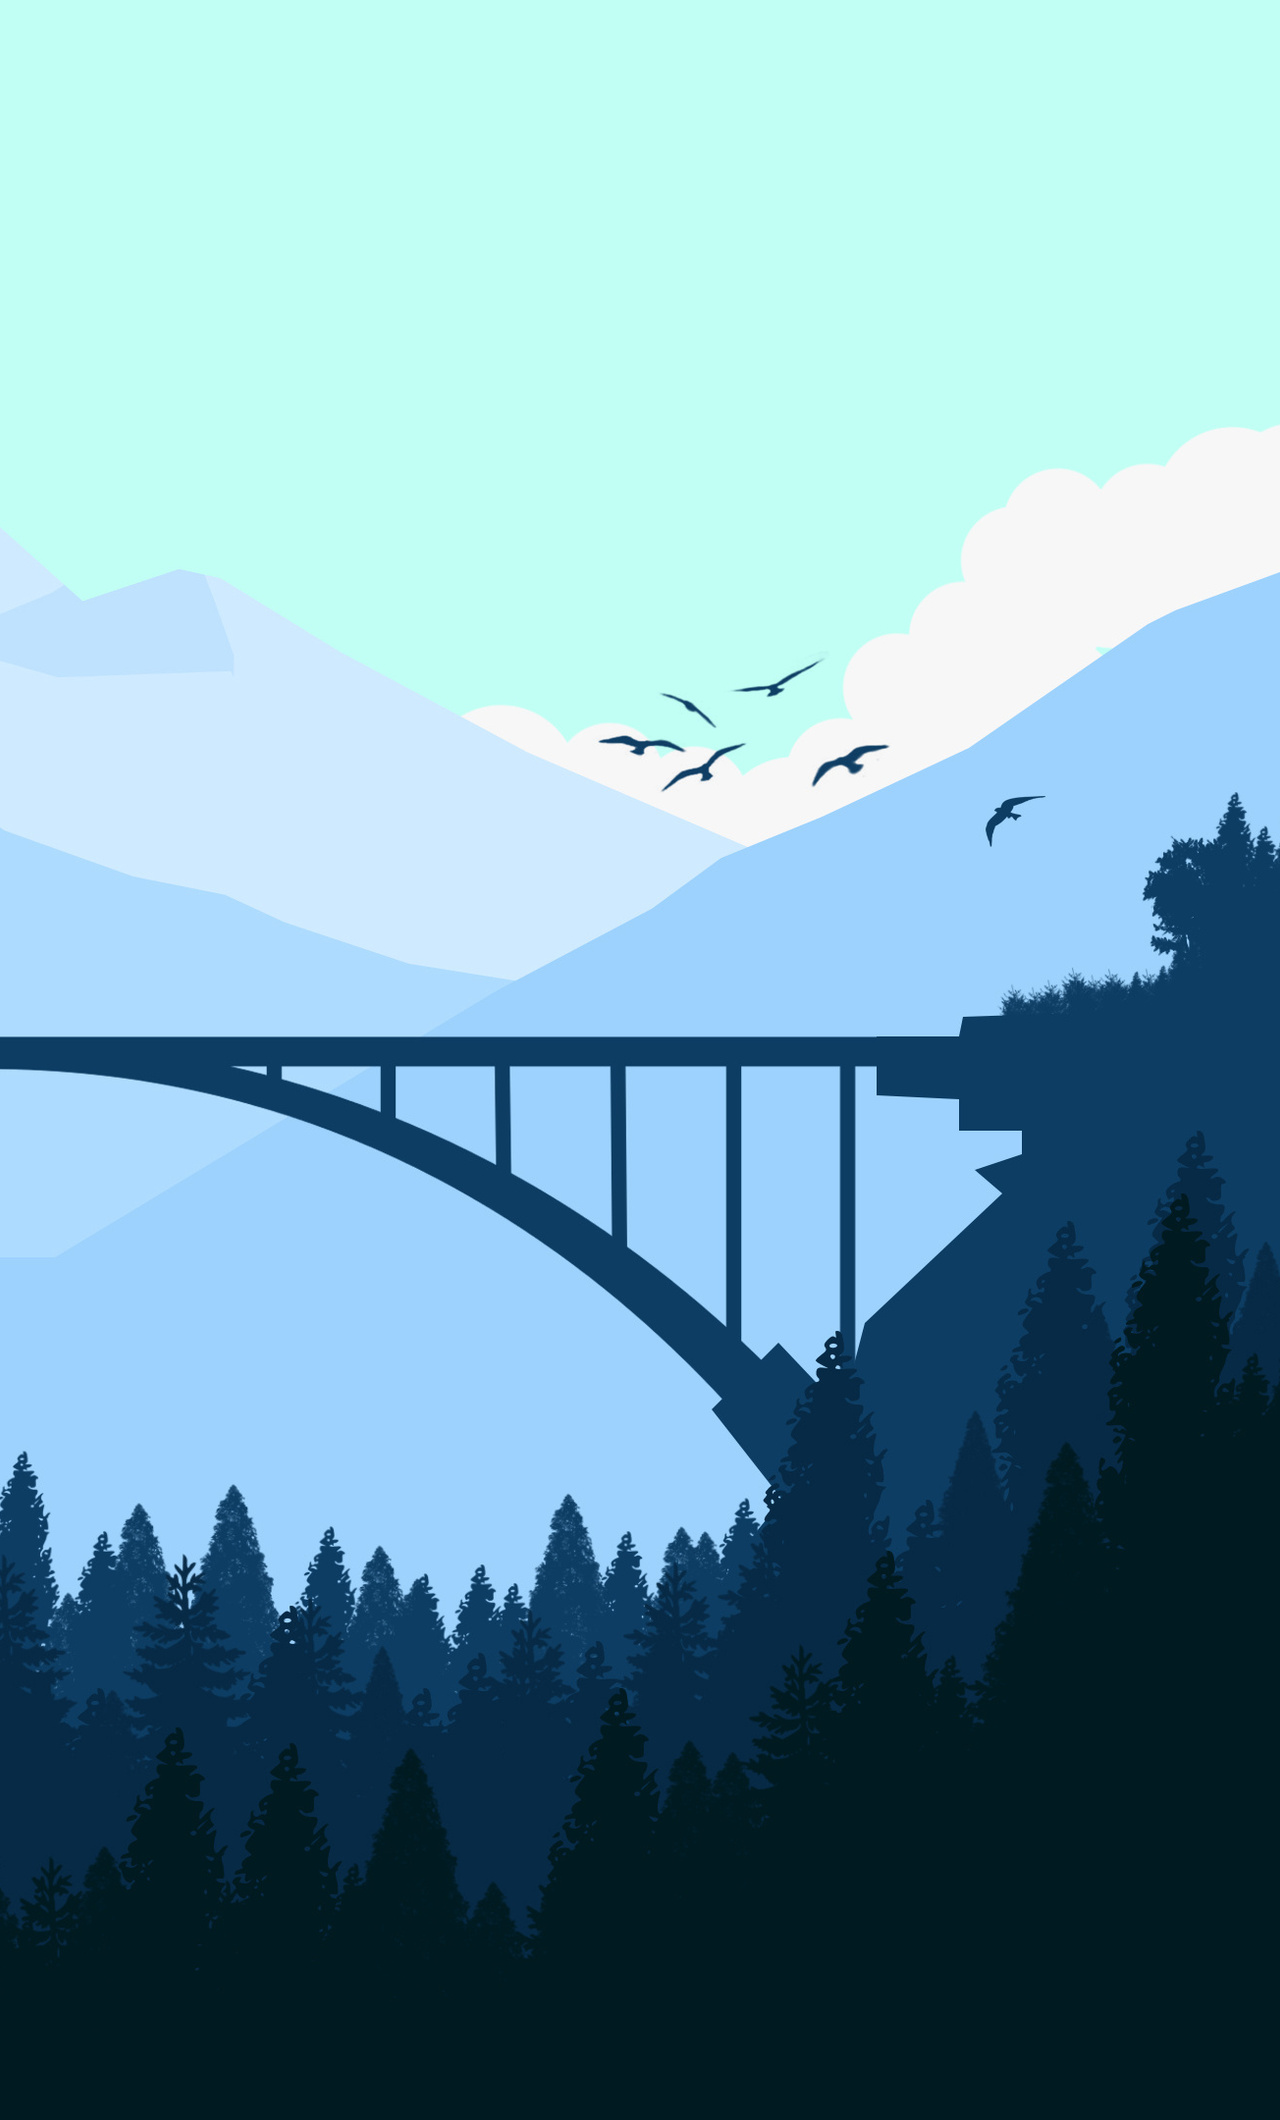 Minimalist Bridge Between Mountains Wallpapers